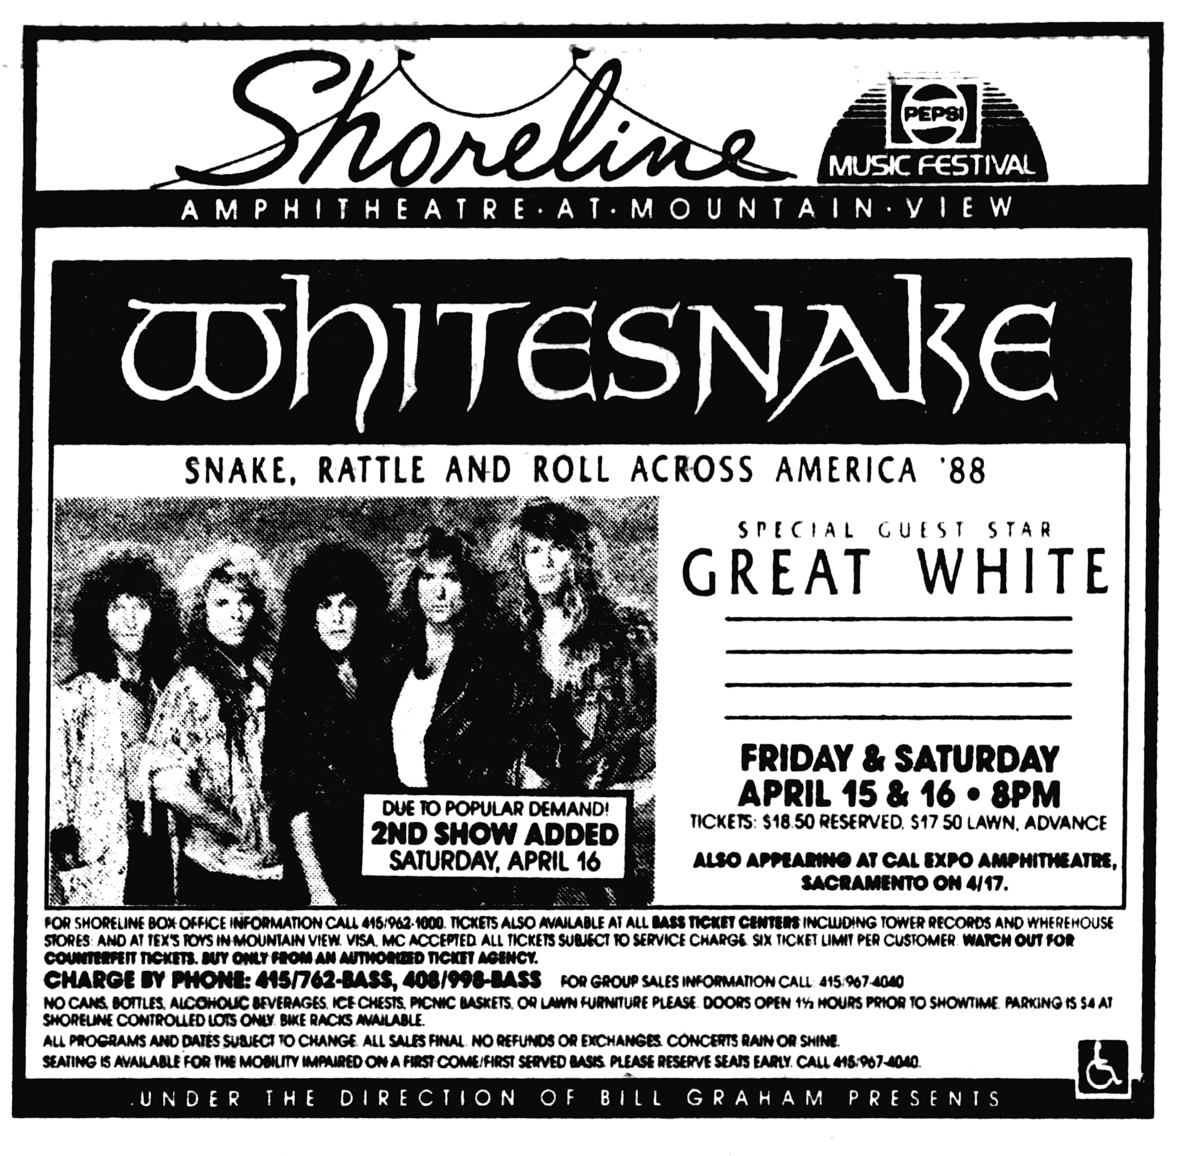 Whitesnake's 1988 Concert & Tour History | Concert Archives